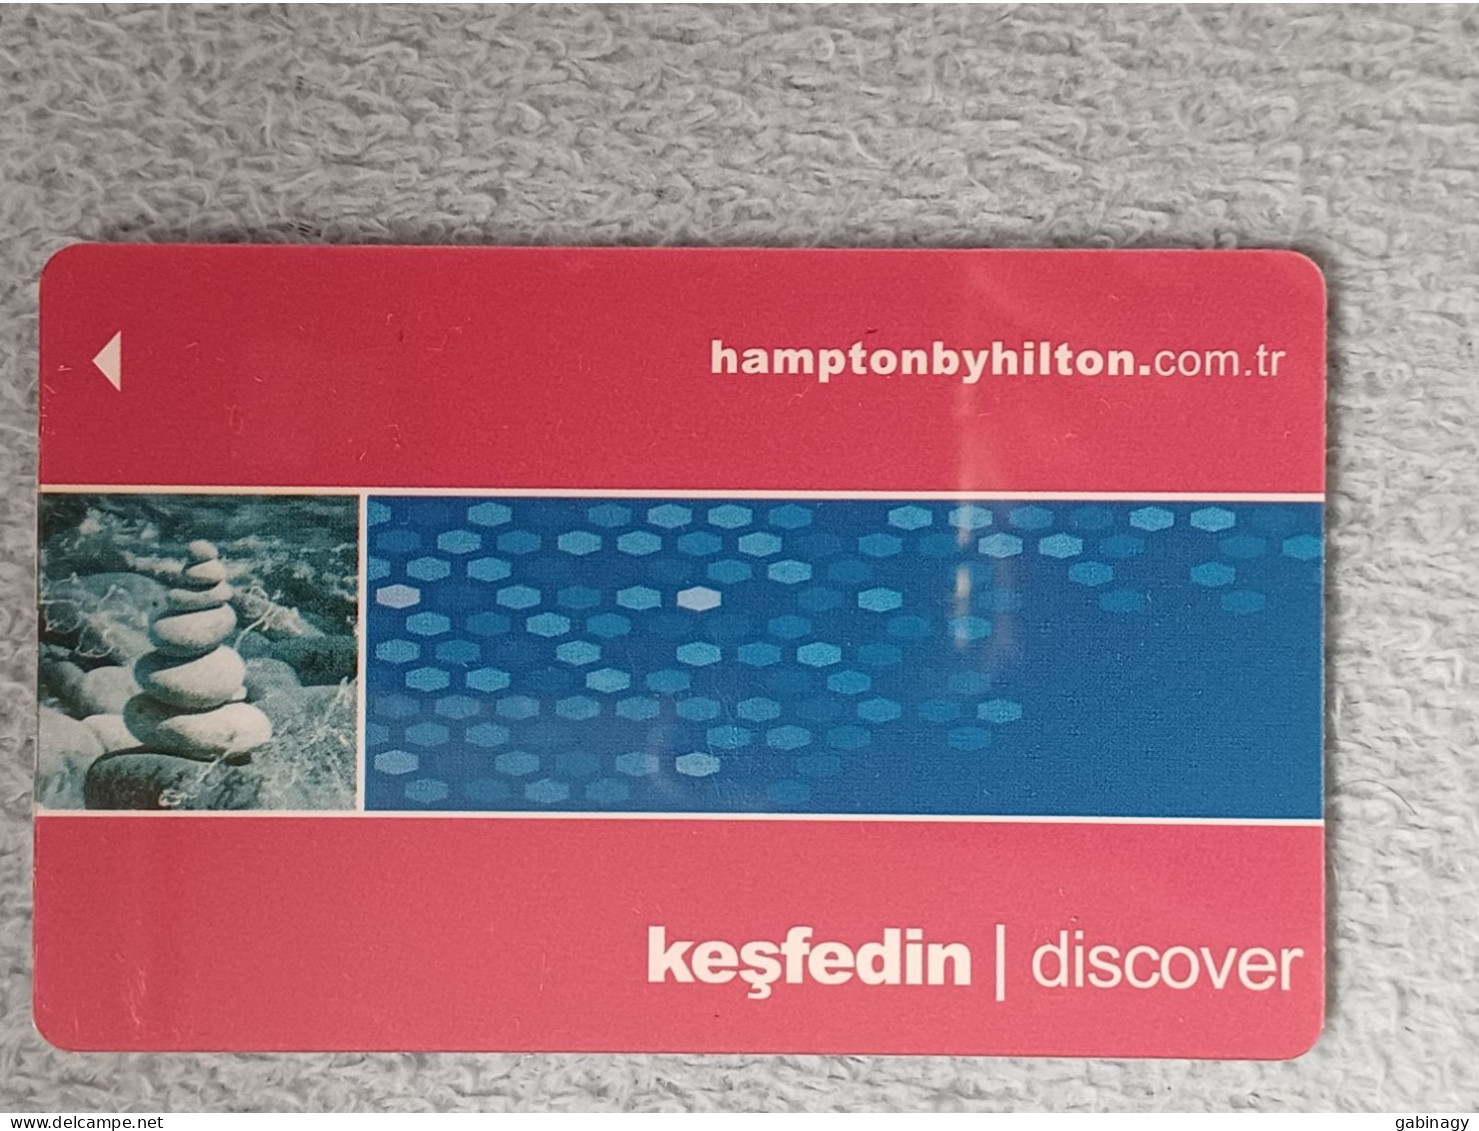 HOTEL KEYS - 2527 - TURKEY - HAMPTON BY HILTON DISCOVER - Hotelkarten